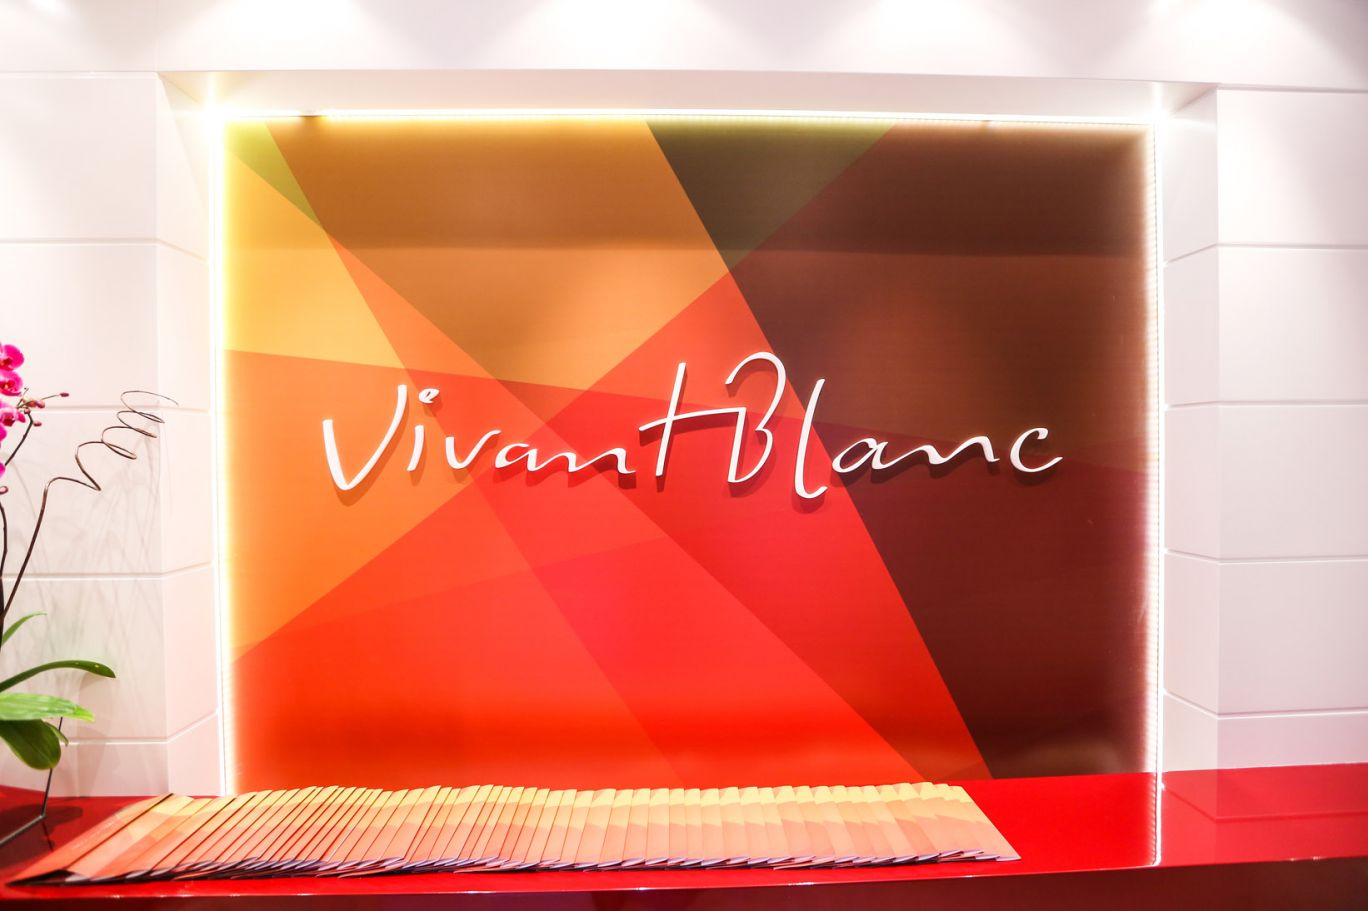 Vivant Blanc - Inauguração